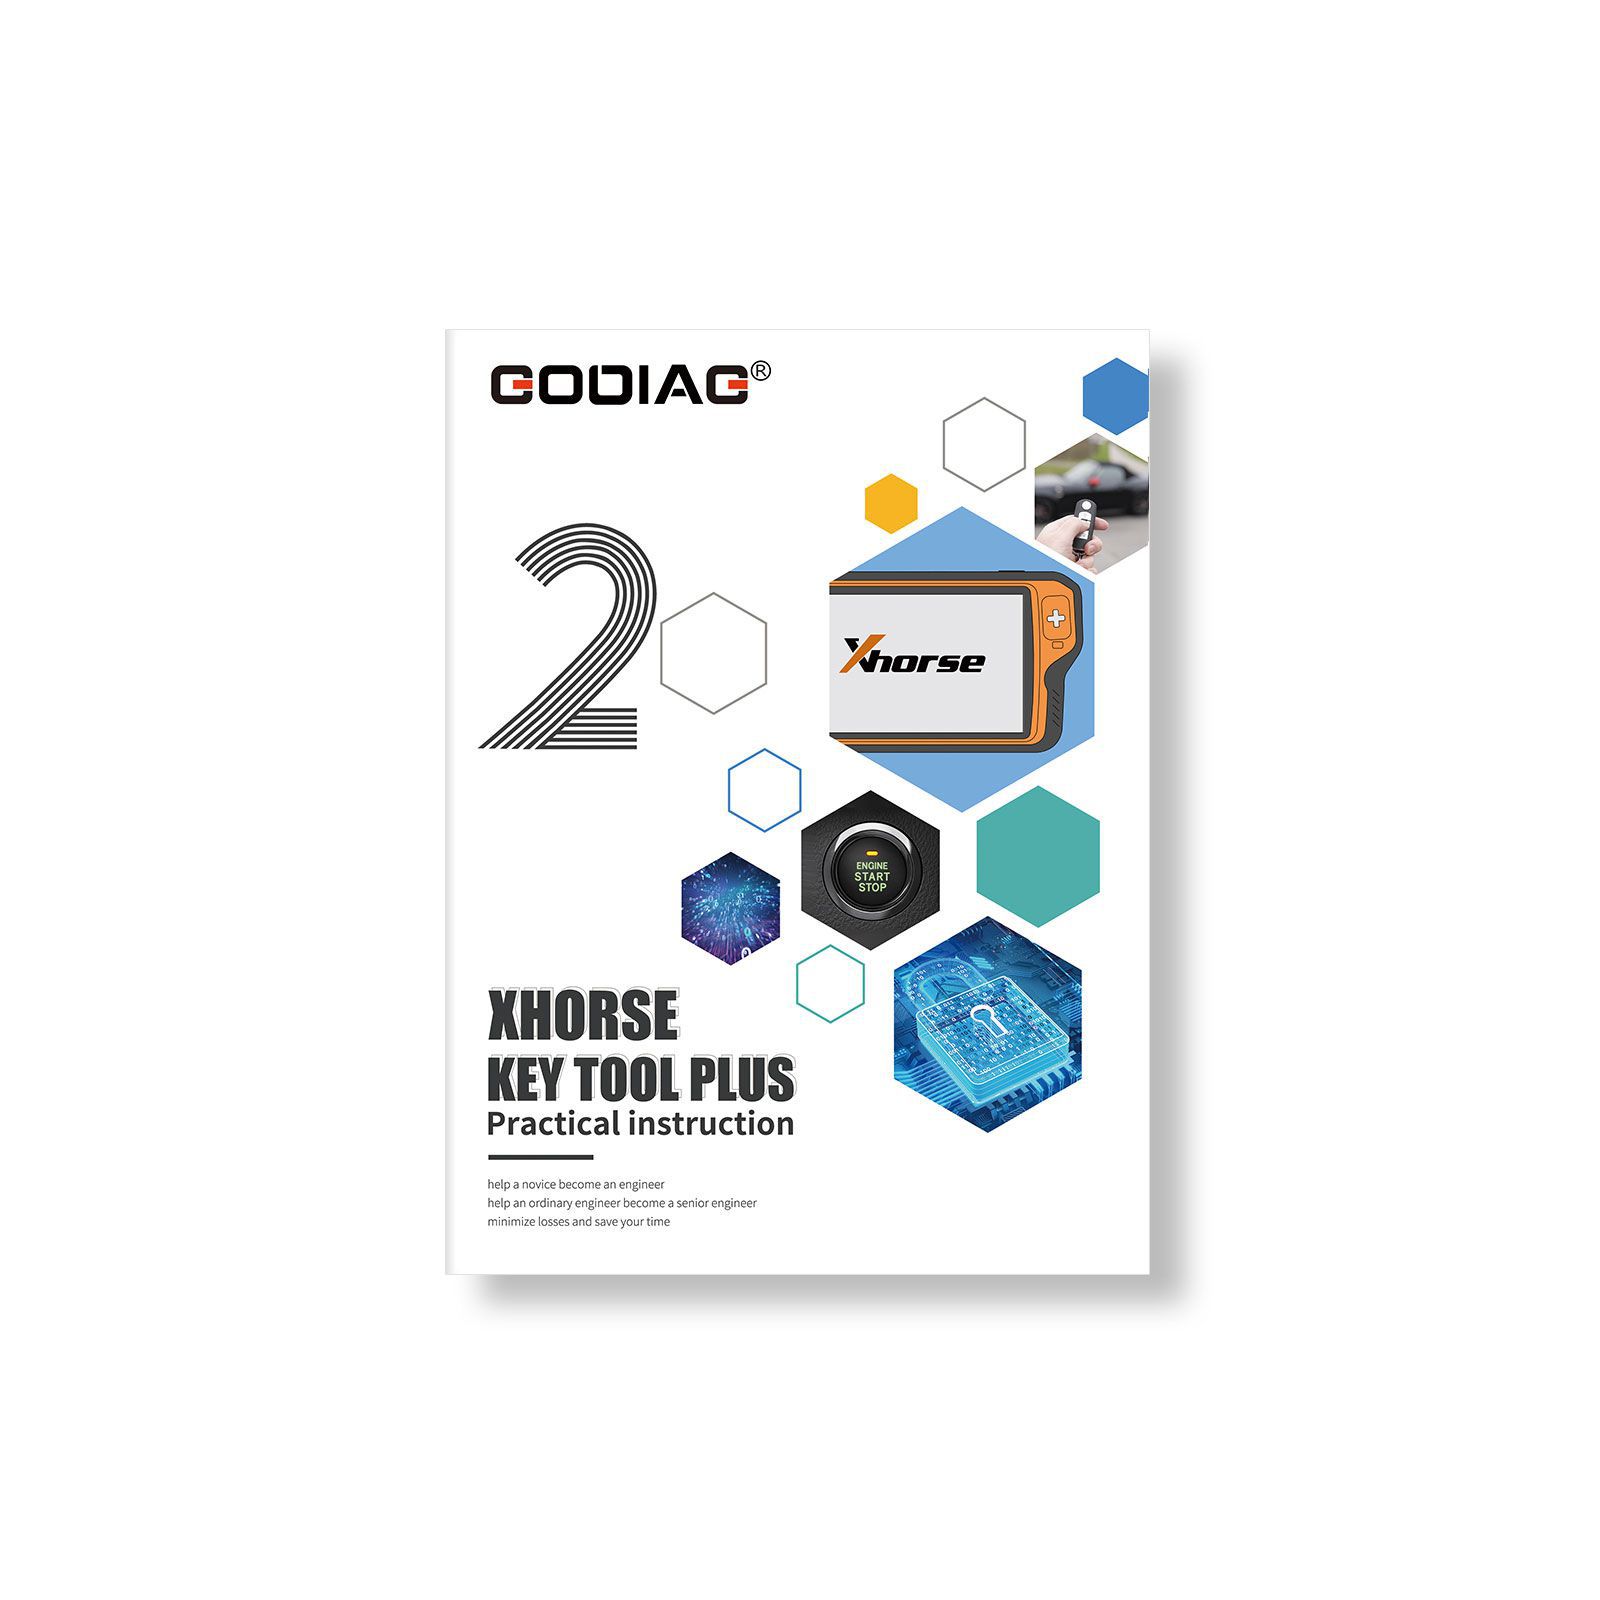 Xhorse VVDI Key Tool Plus Pad mit GODIAG Praktische Anleitung 1&2 Zwei Bücher